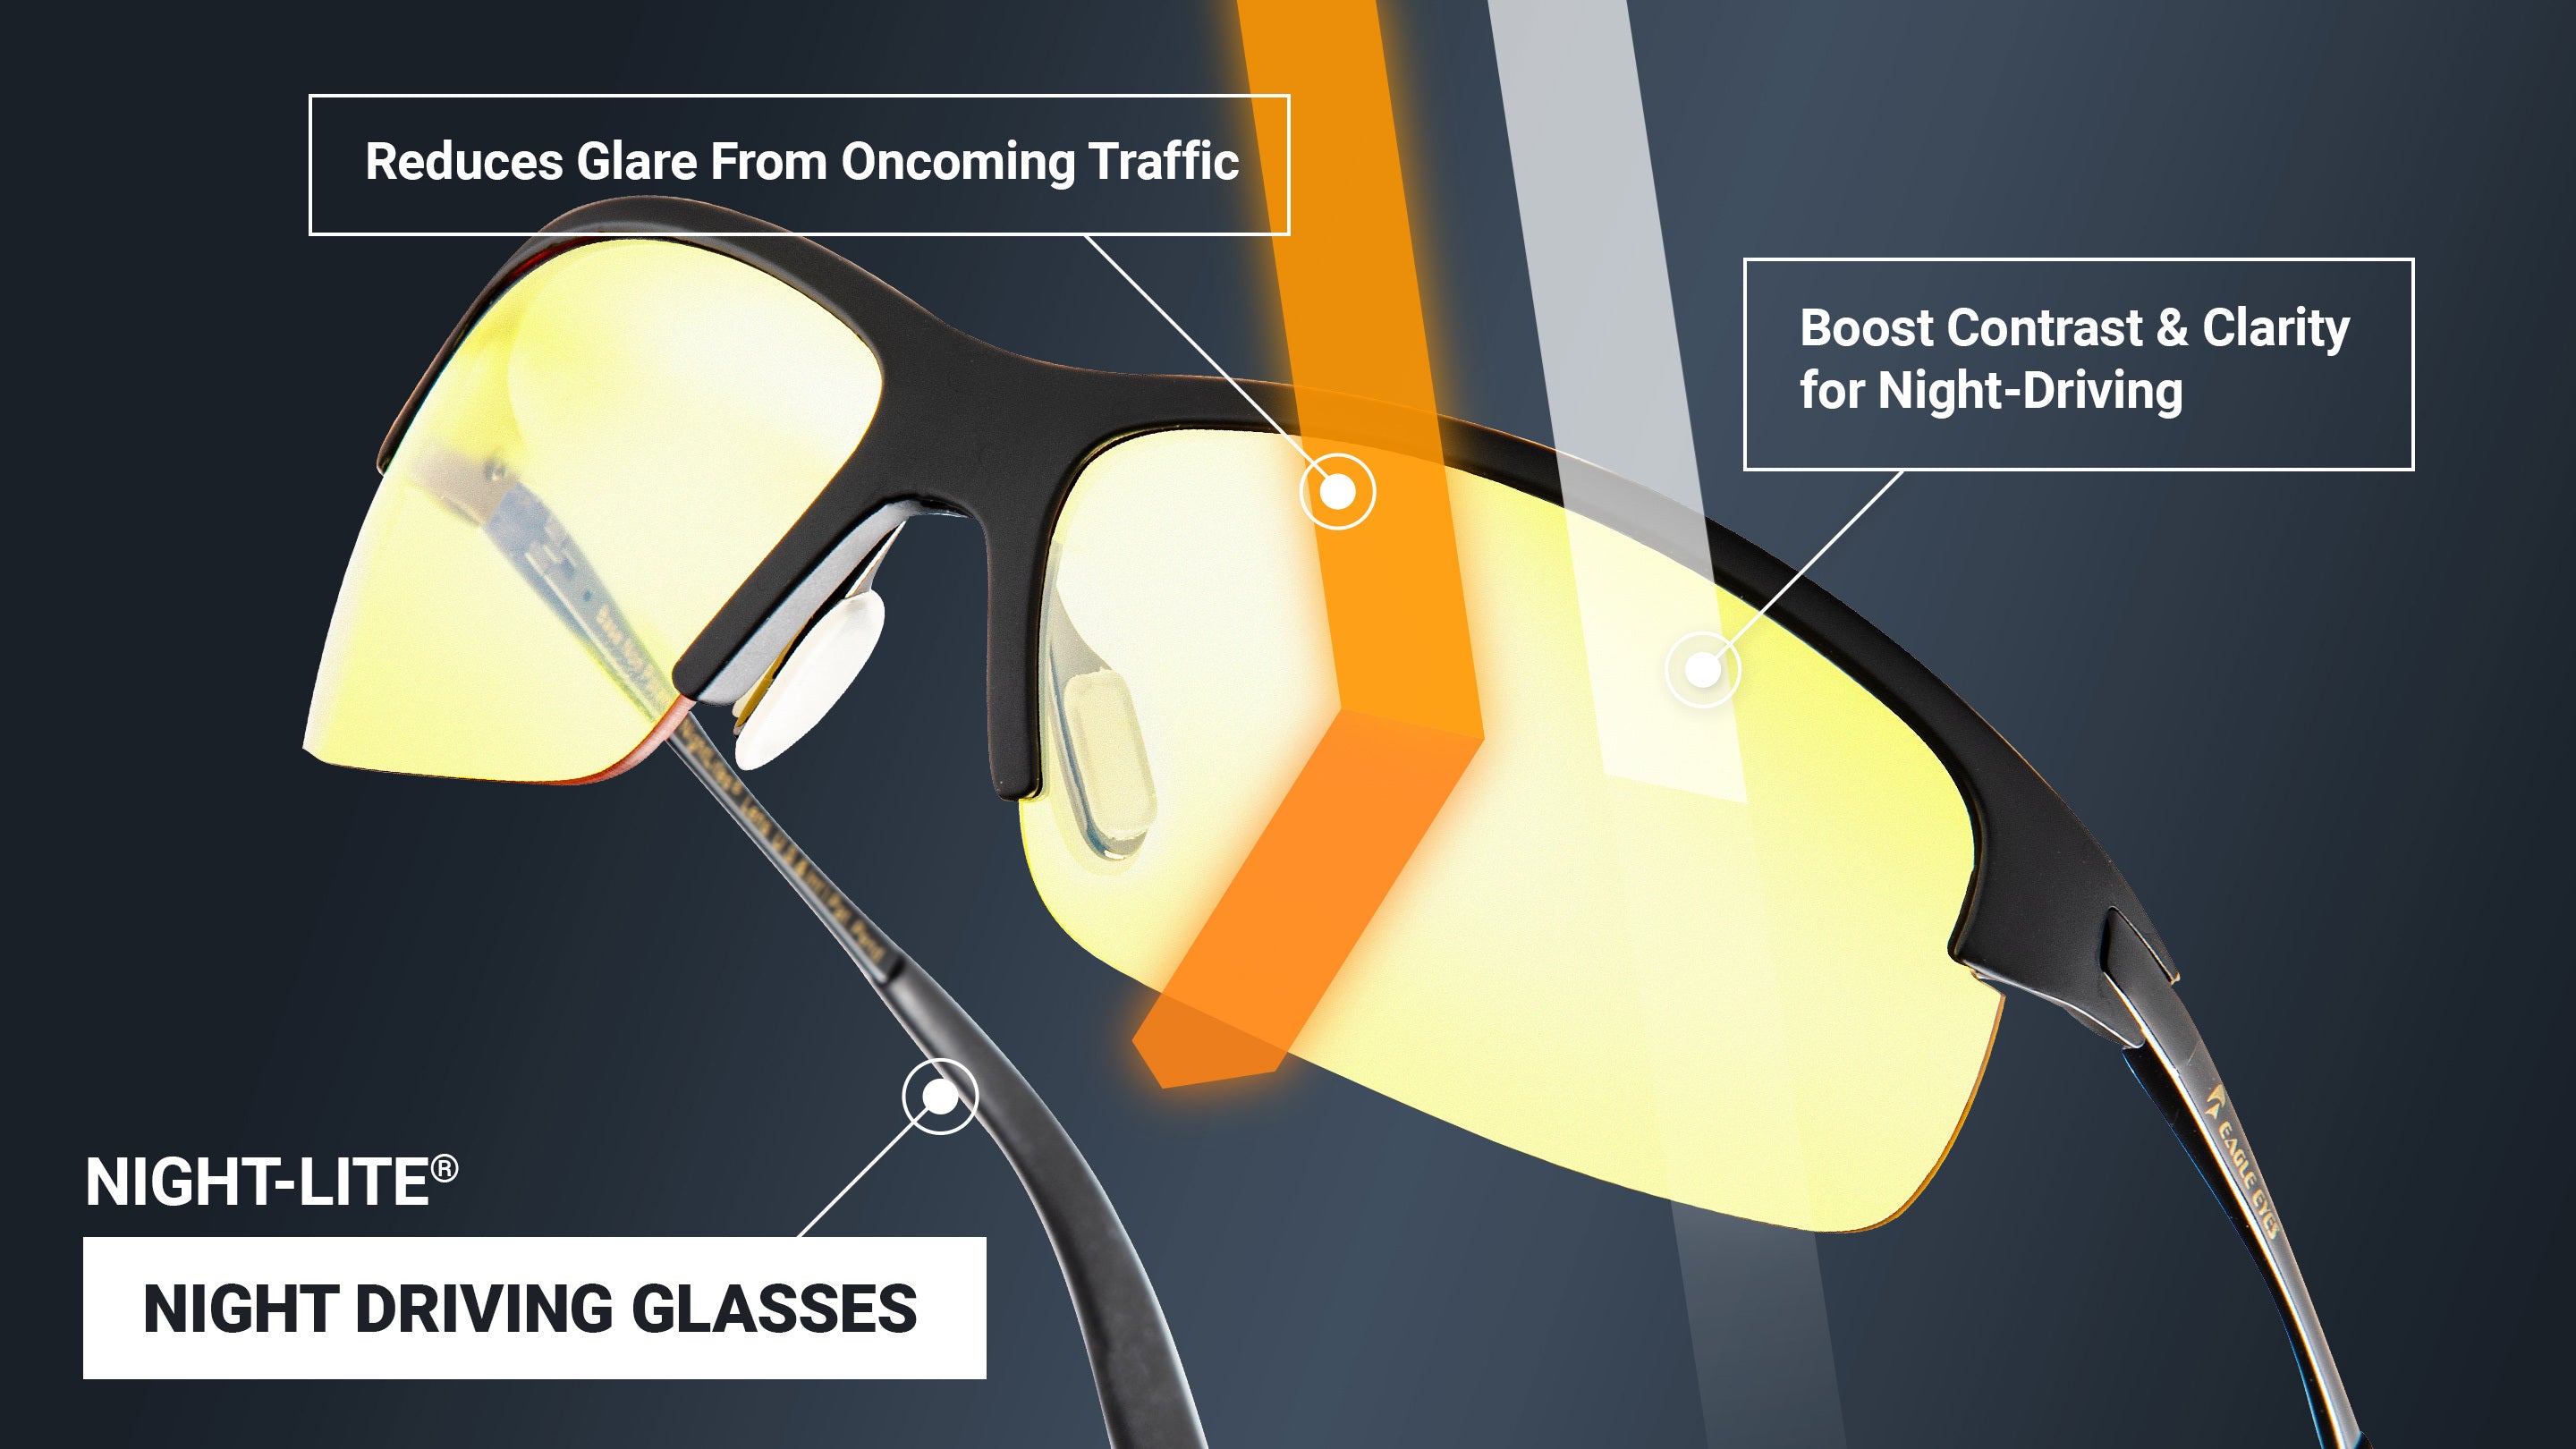 Por qué algunas lentes se teñidas de color amarillo? – Eagle Eyes Optics